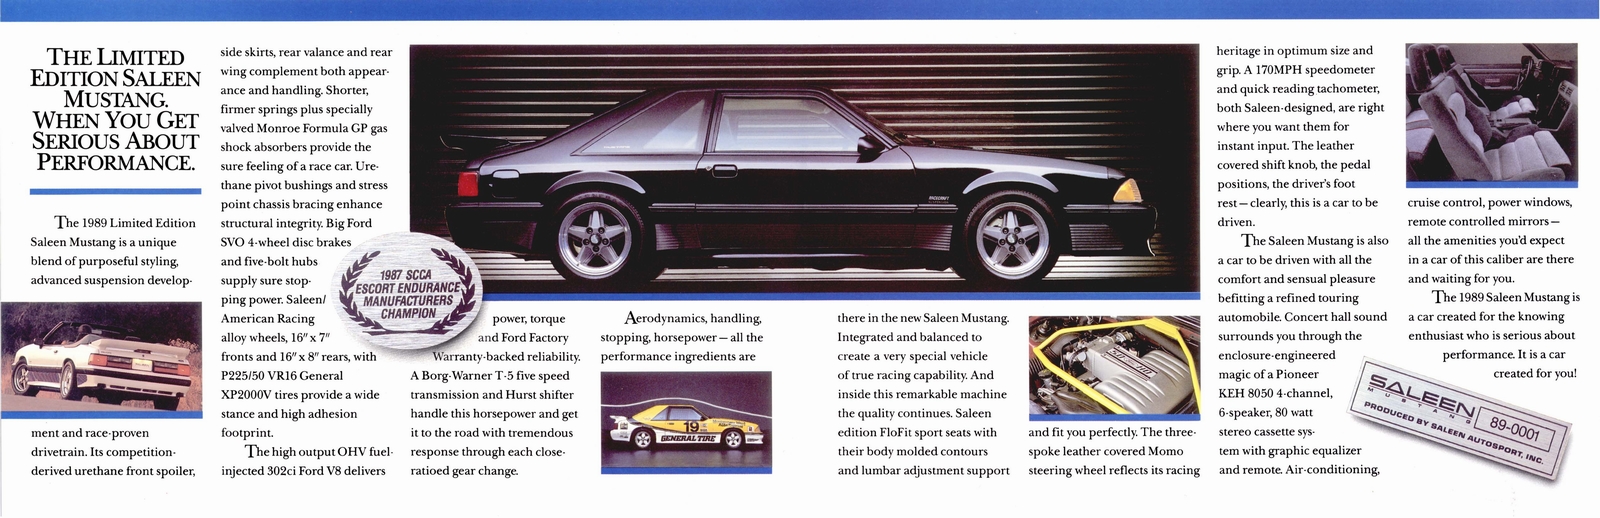 n_1989 Saleen Mustang Folder-02-03.jpg